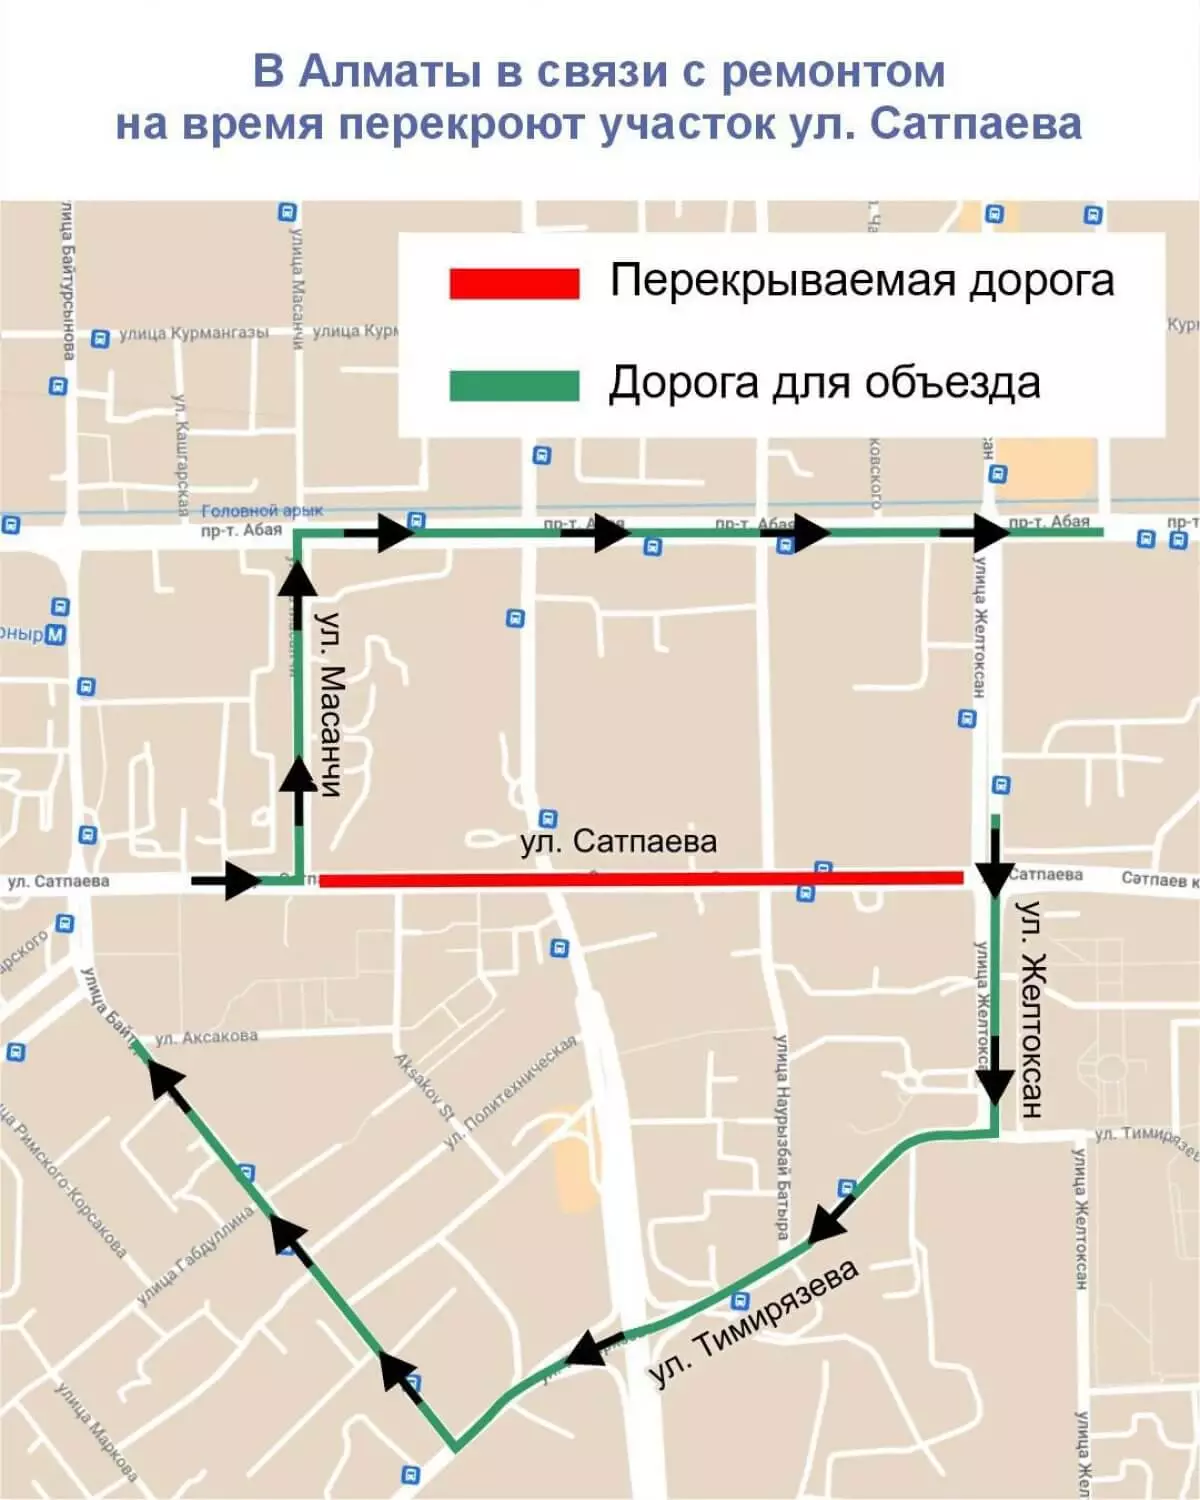 В Алматы в связи с ремонтом на время перекроют участок улицы Сатпаева